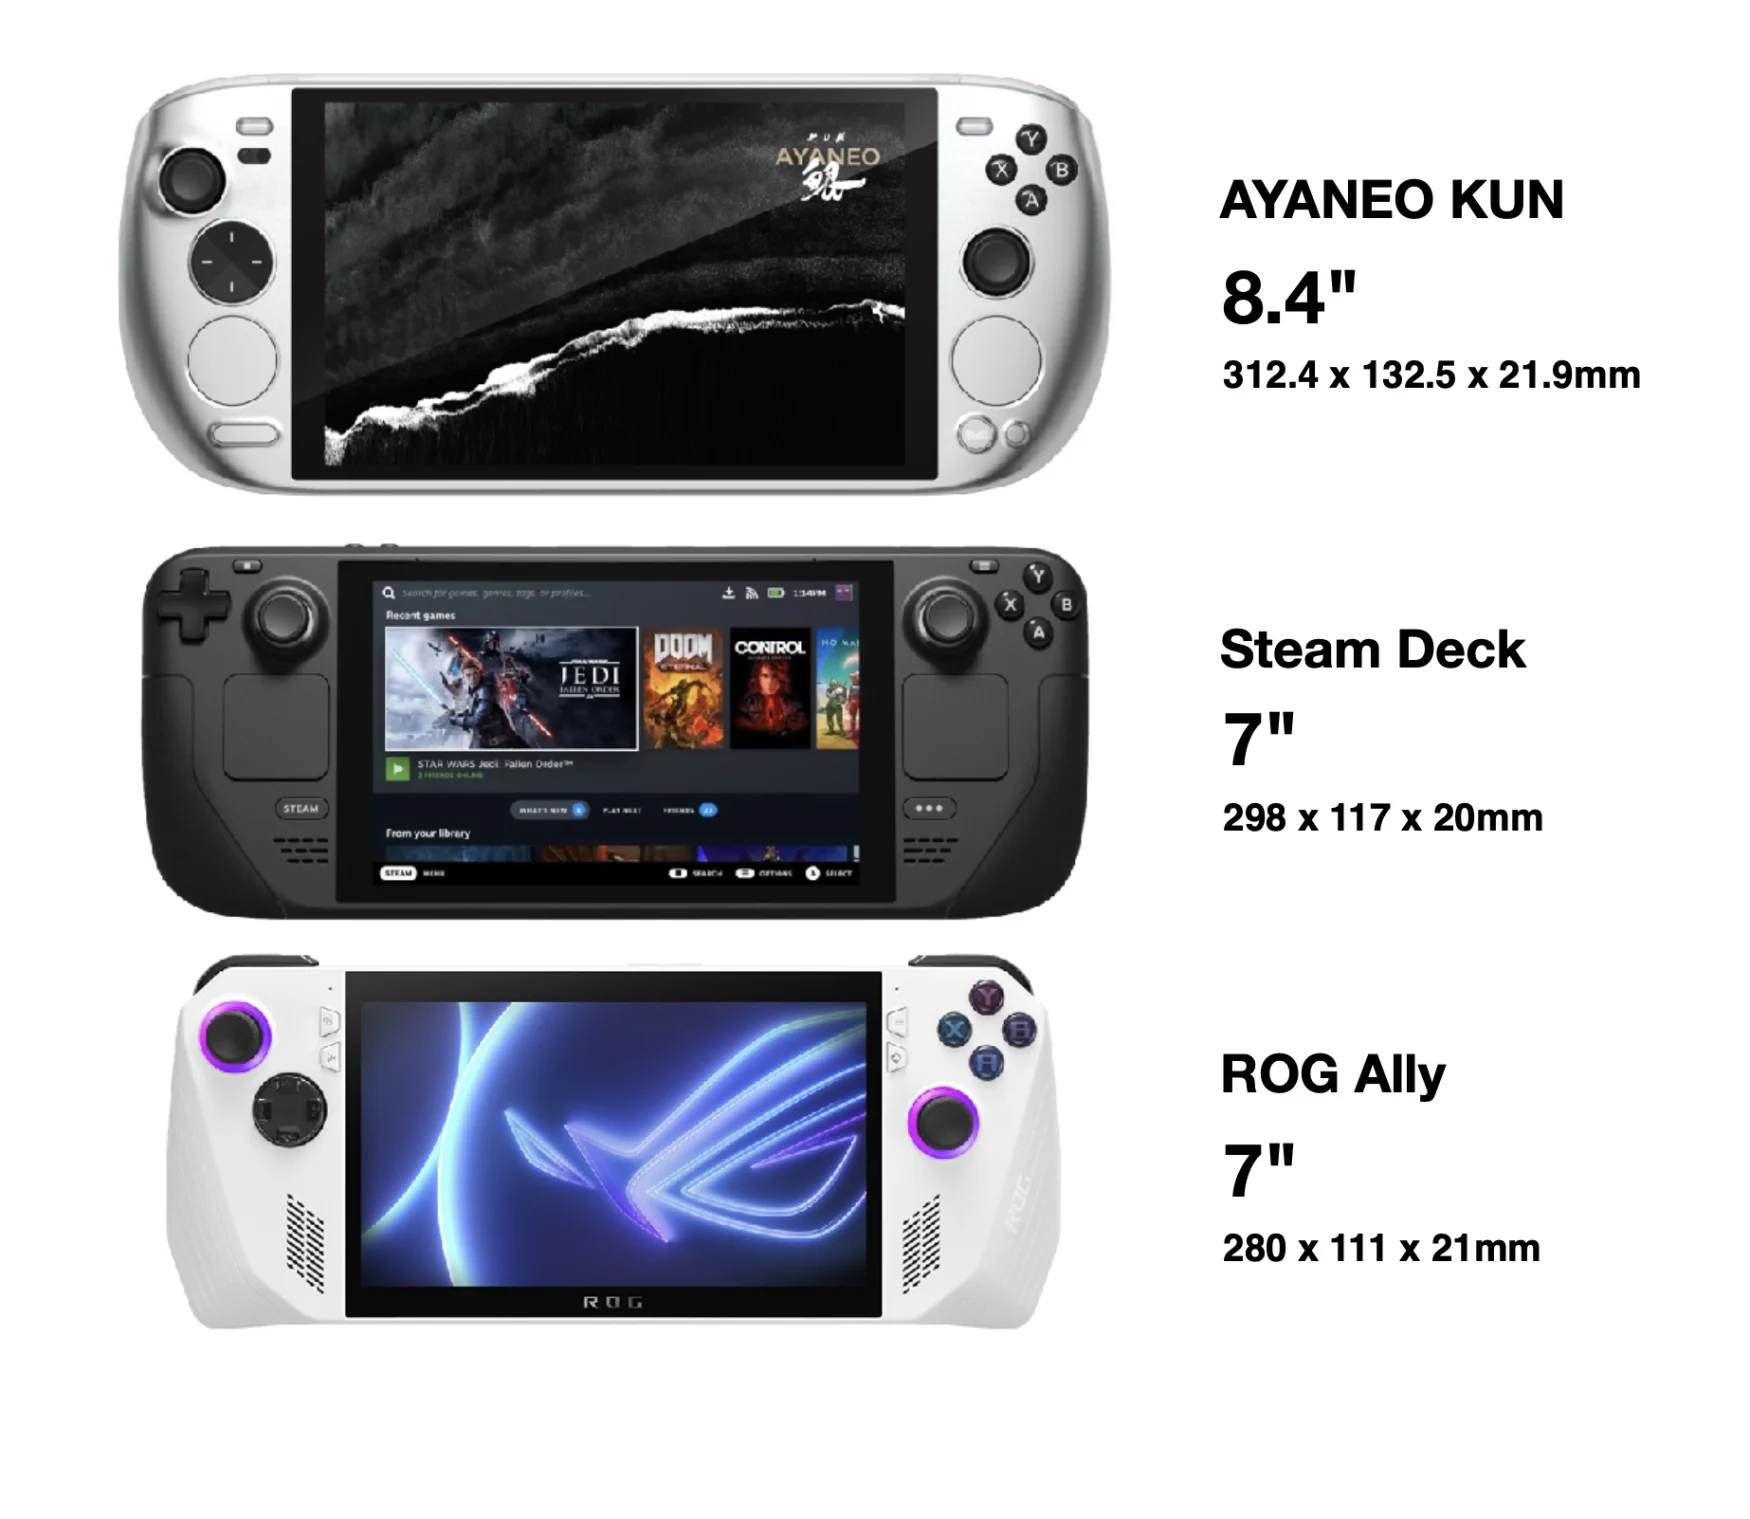 Screen comparison: Ayaneo Kun vs. Steam Deck vs. ROG Ally.